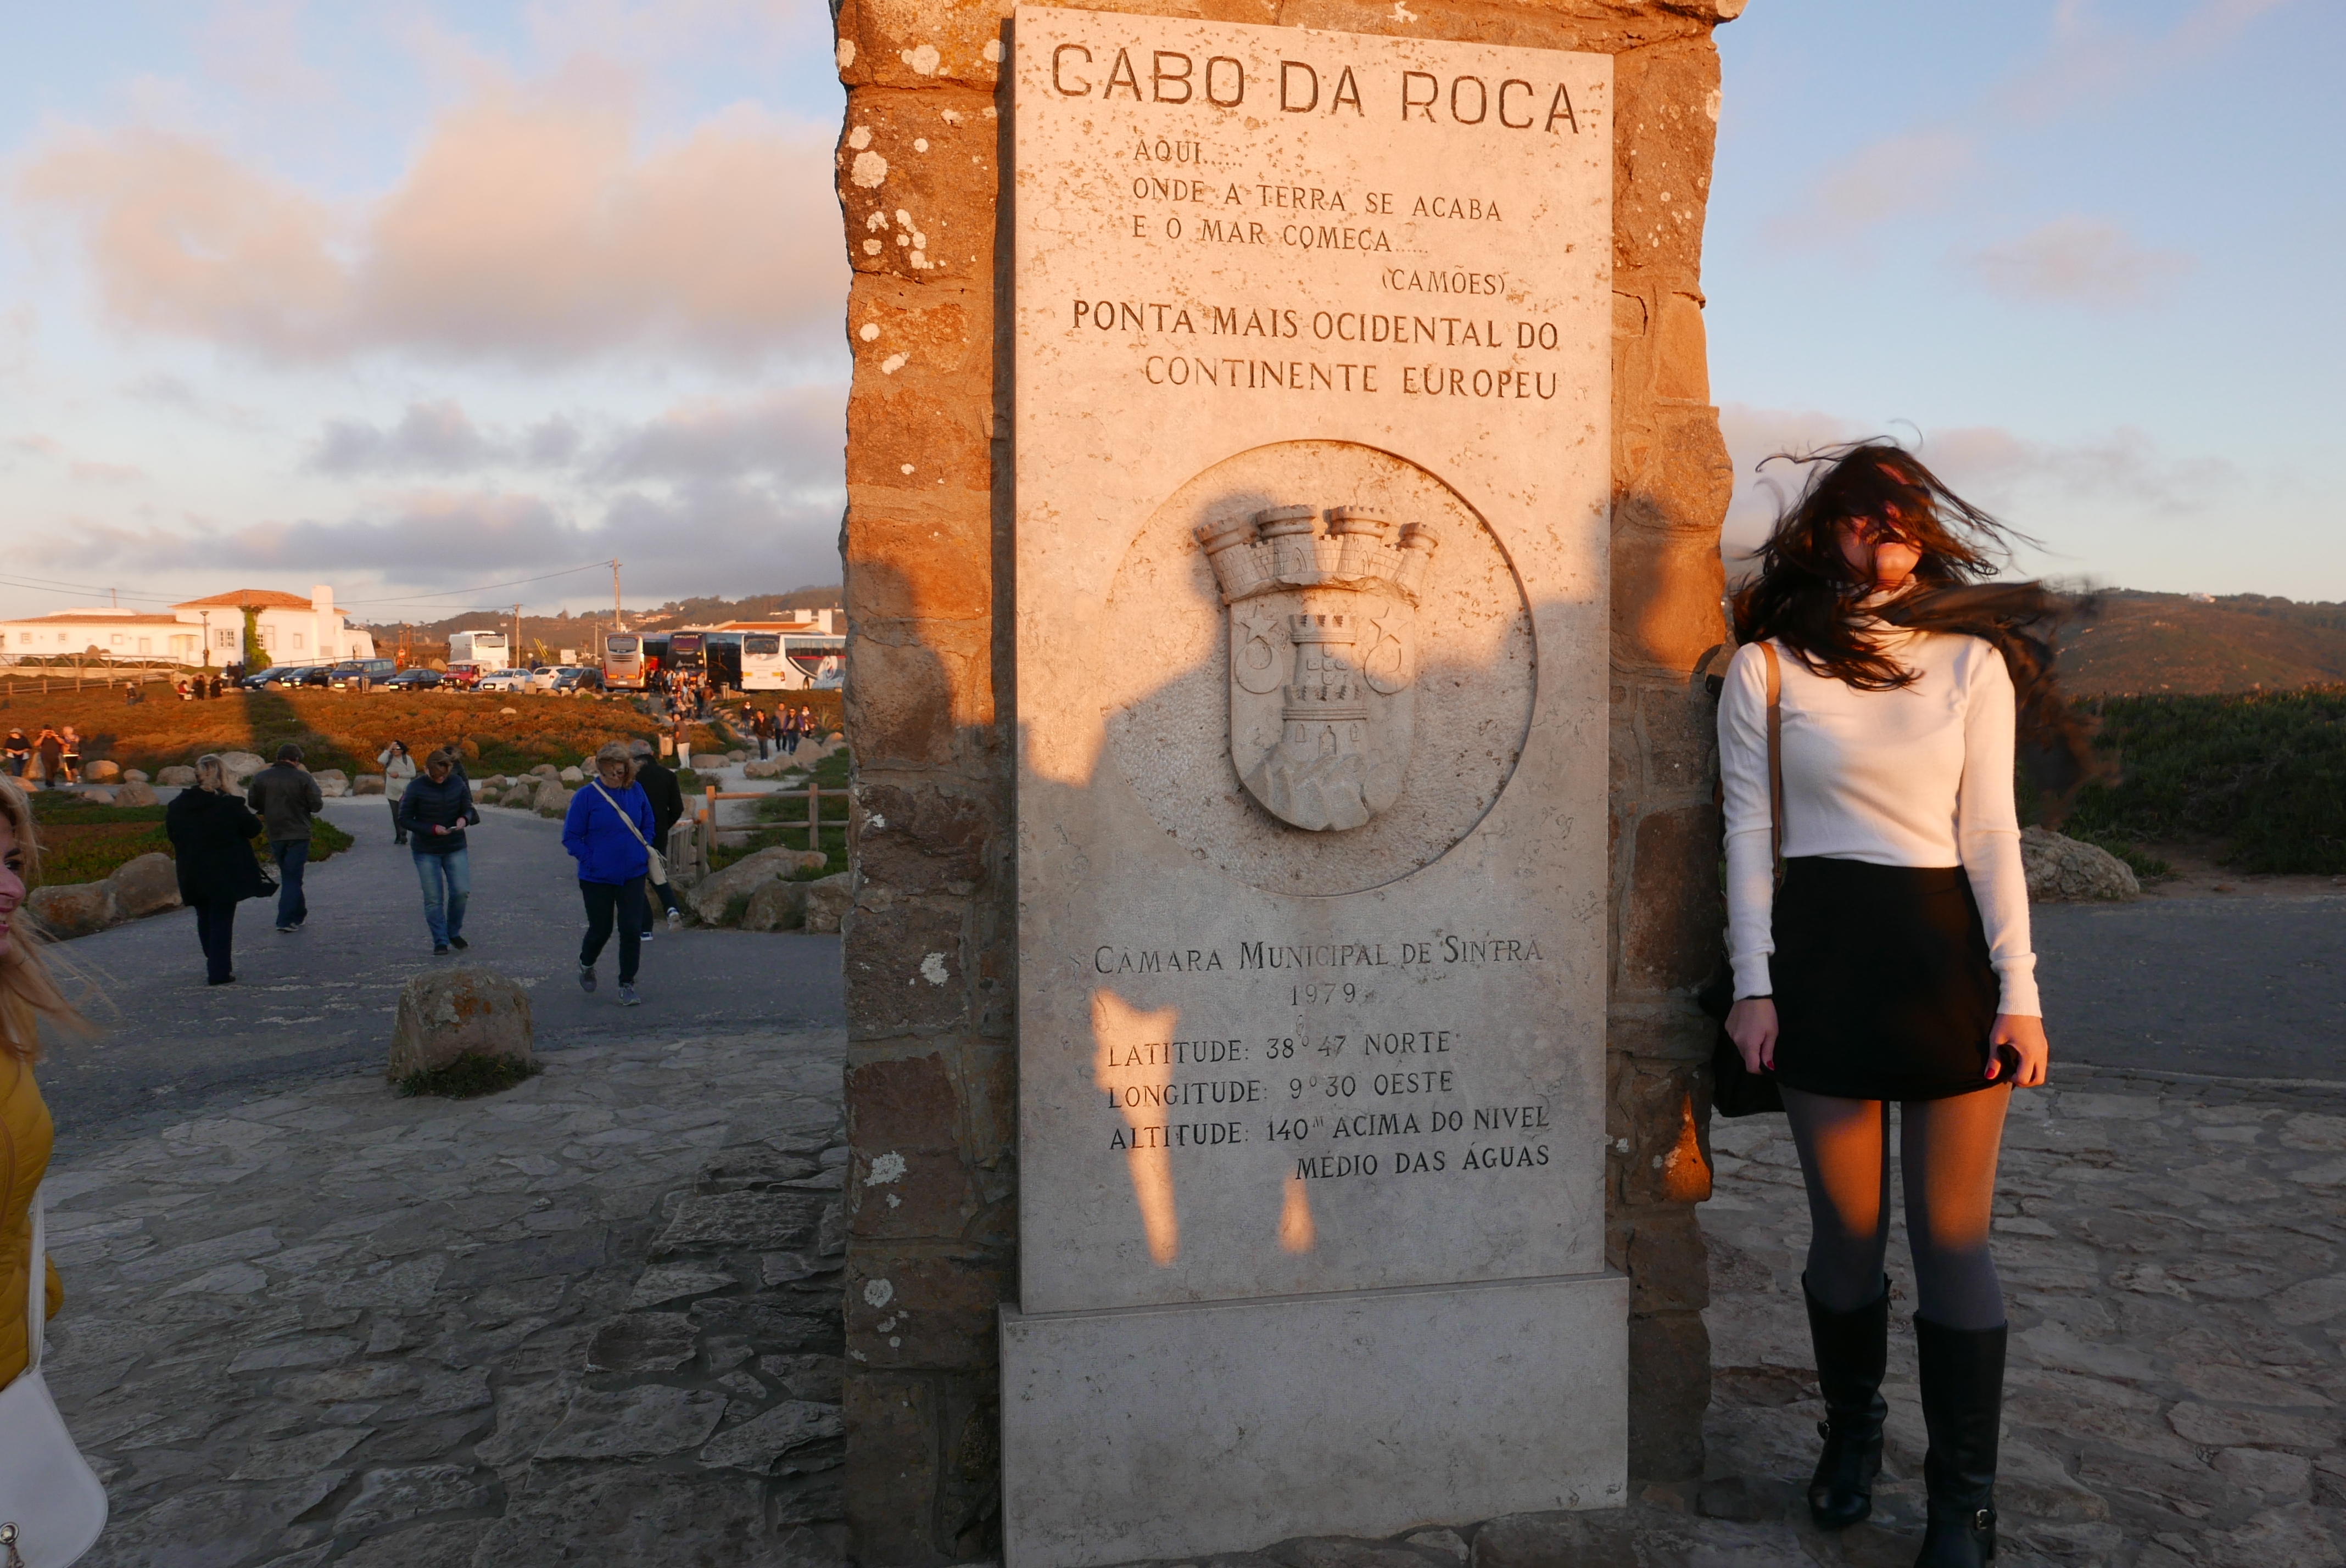 Em Cabo da Roca, onde "a terra se acaba e o mar começa", como disse o poeta lusitano Luiz Vaz de Camões